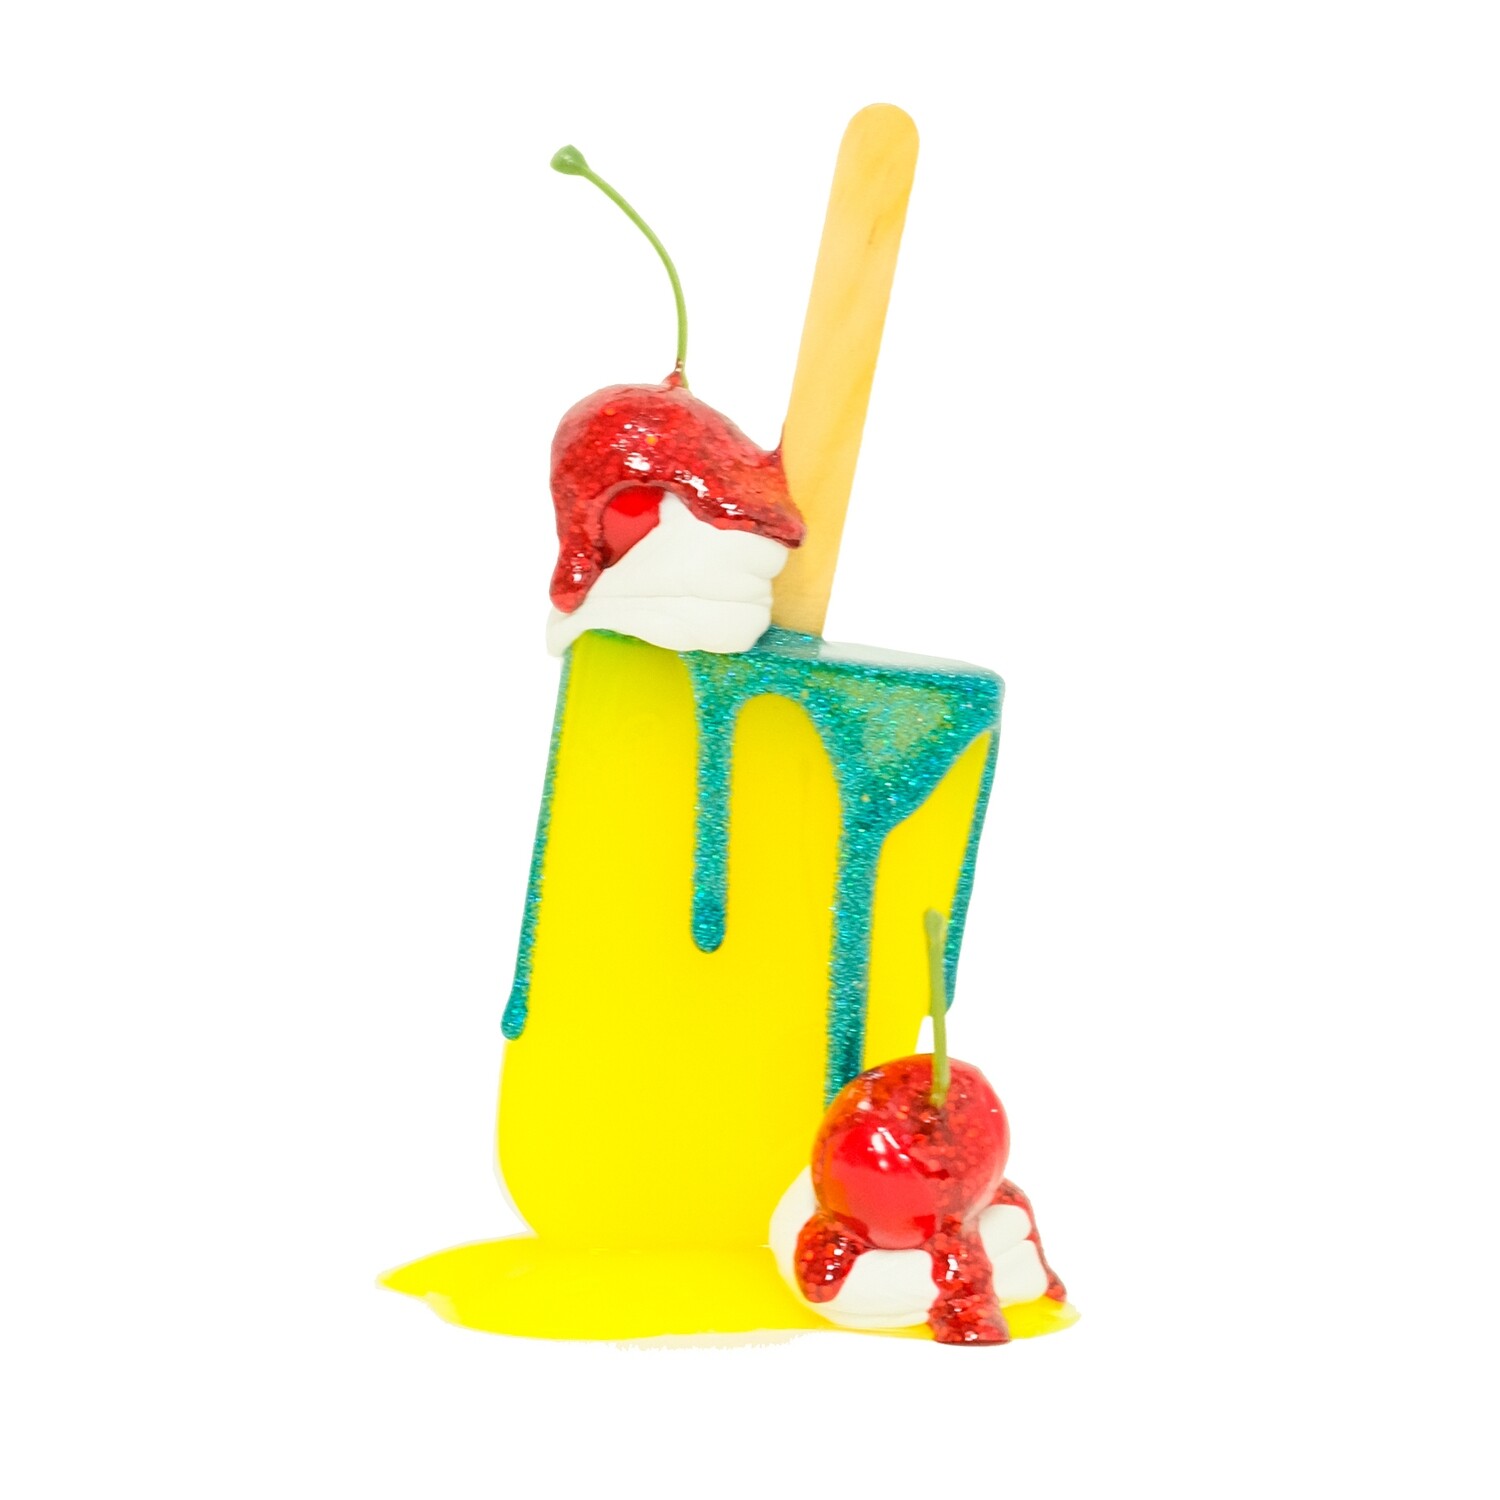 Melting Popsicle Art - 67 - Original Melting Pops